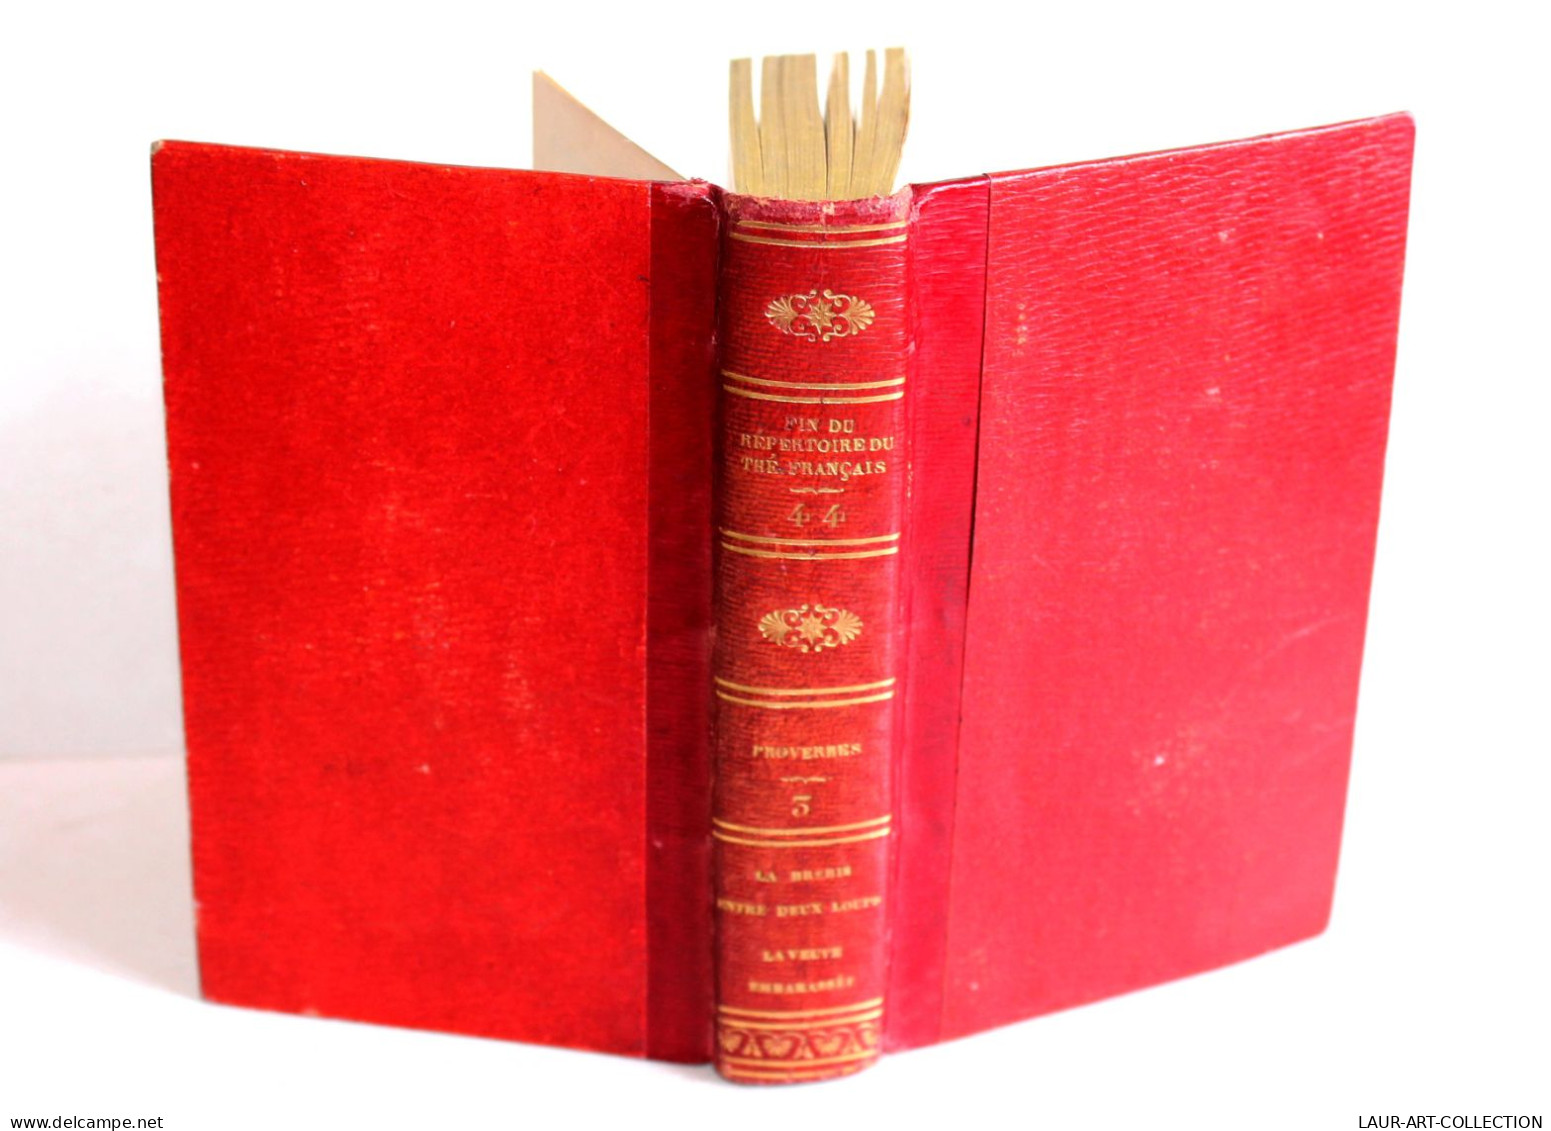 FIN DU REPERTOIRE DU THEATRE FRANCAIS Par LEPEINTRE PROVERBES TOME III 1824 DABO / LIVRE ANCIEN XIXe SIECLE (1803.252) - Franse Schrijvers